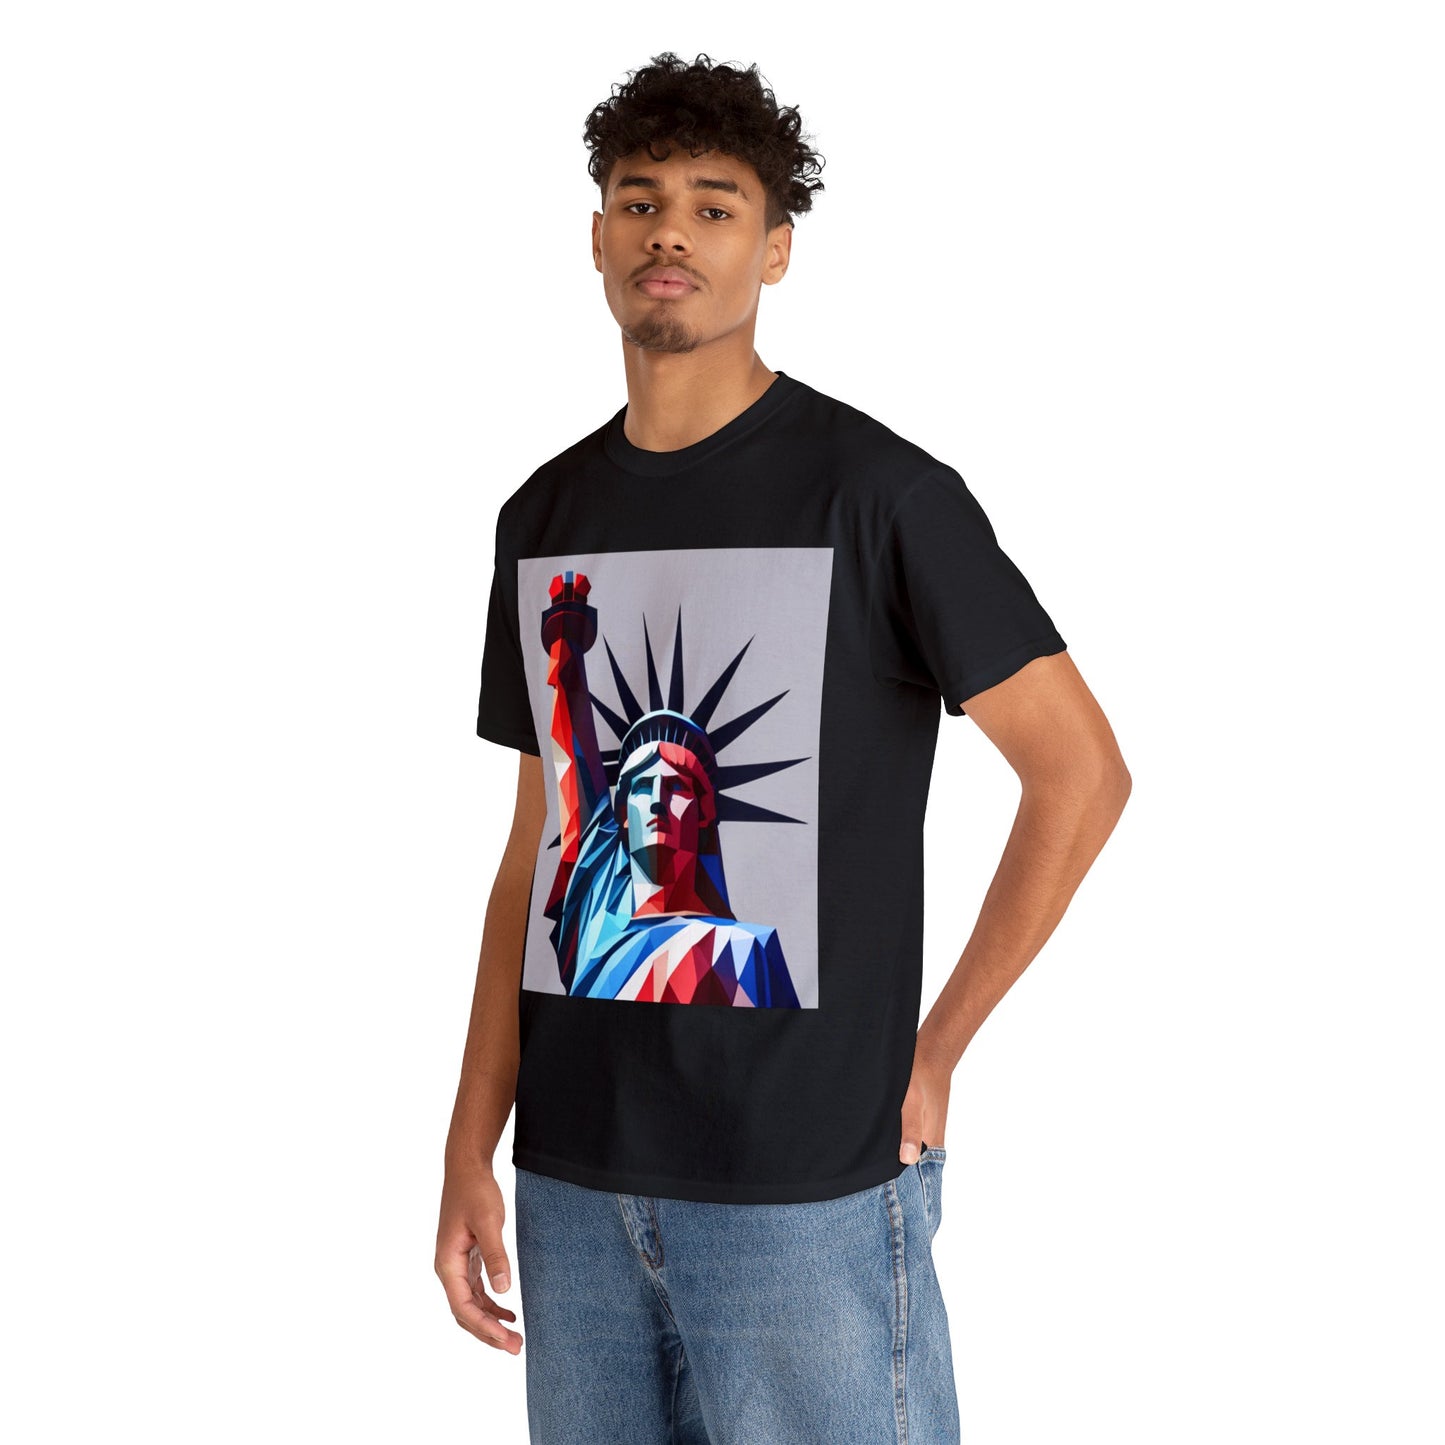 Beutiful American Statue of Liberty T-Shirt